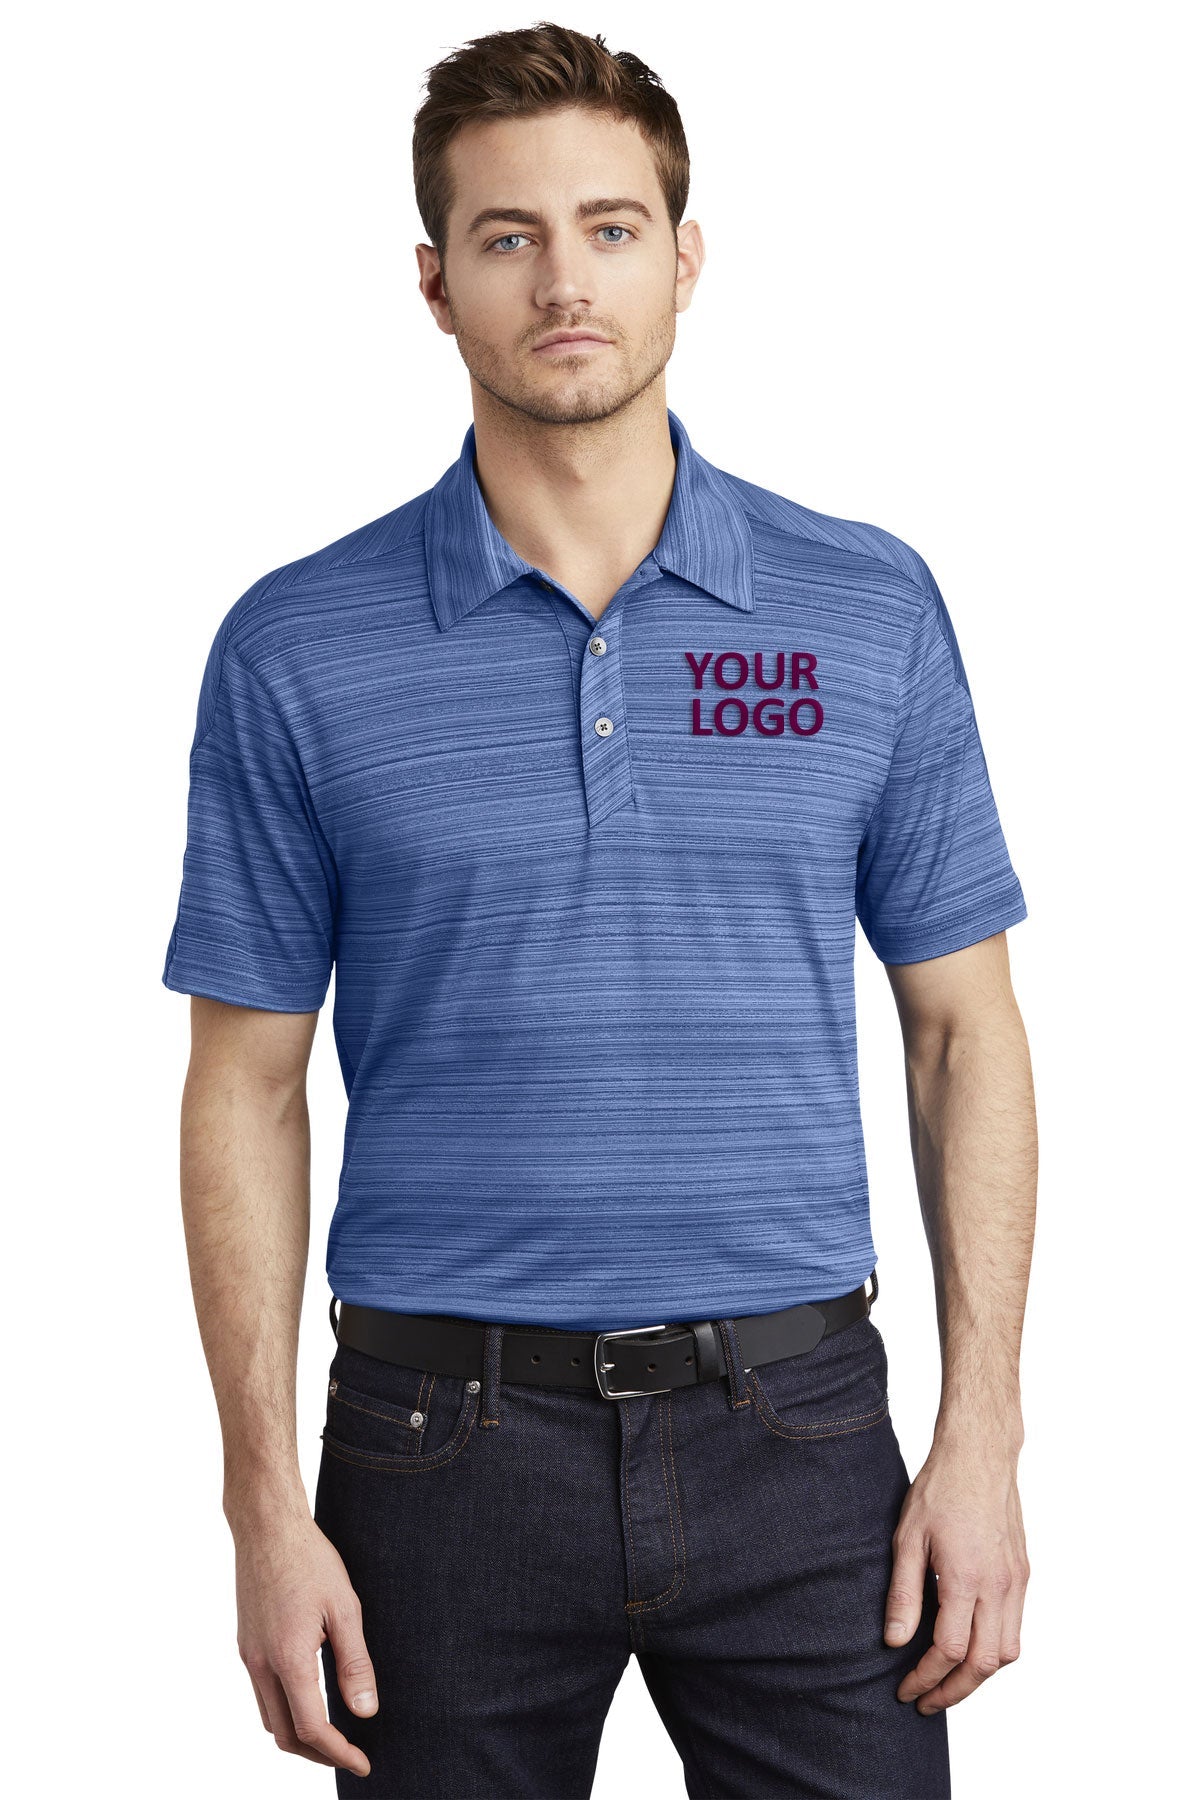 OGIO Blue Indigo OG116 work polo shirts with logo